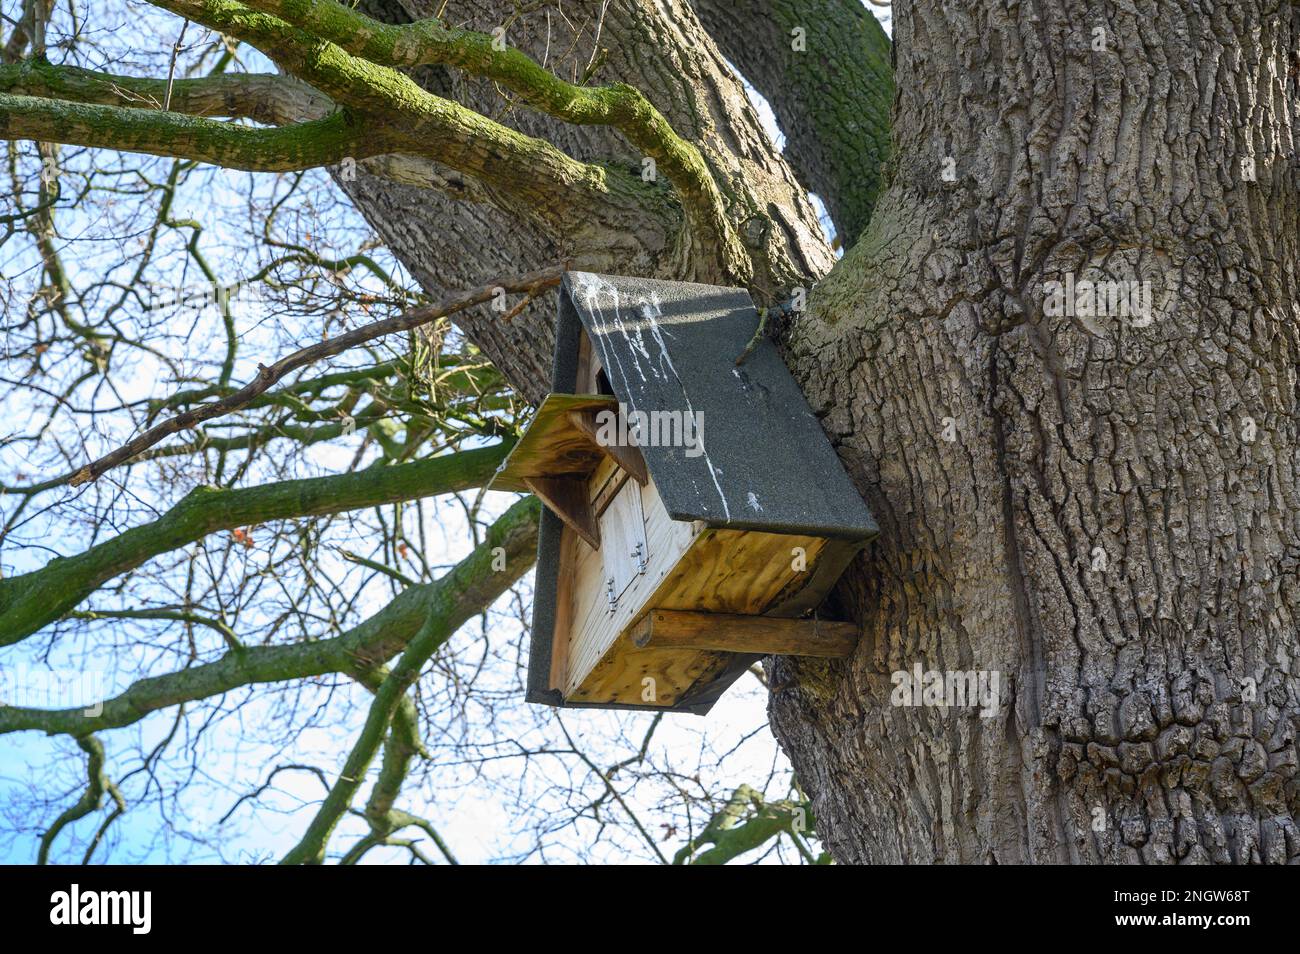 Ich schaue auf eine Eulennestkiste, die an einem großen Baum auf dem Land befestigt ist. Stockfoto